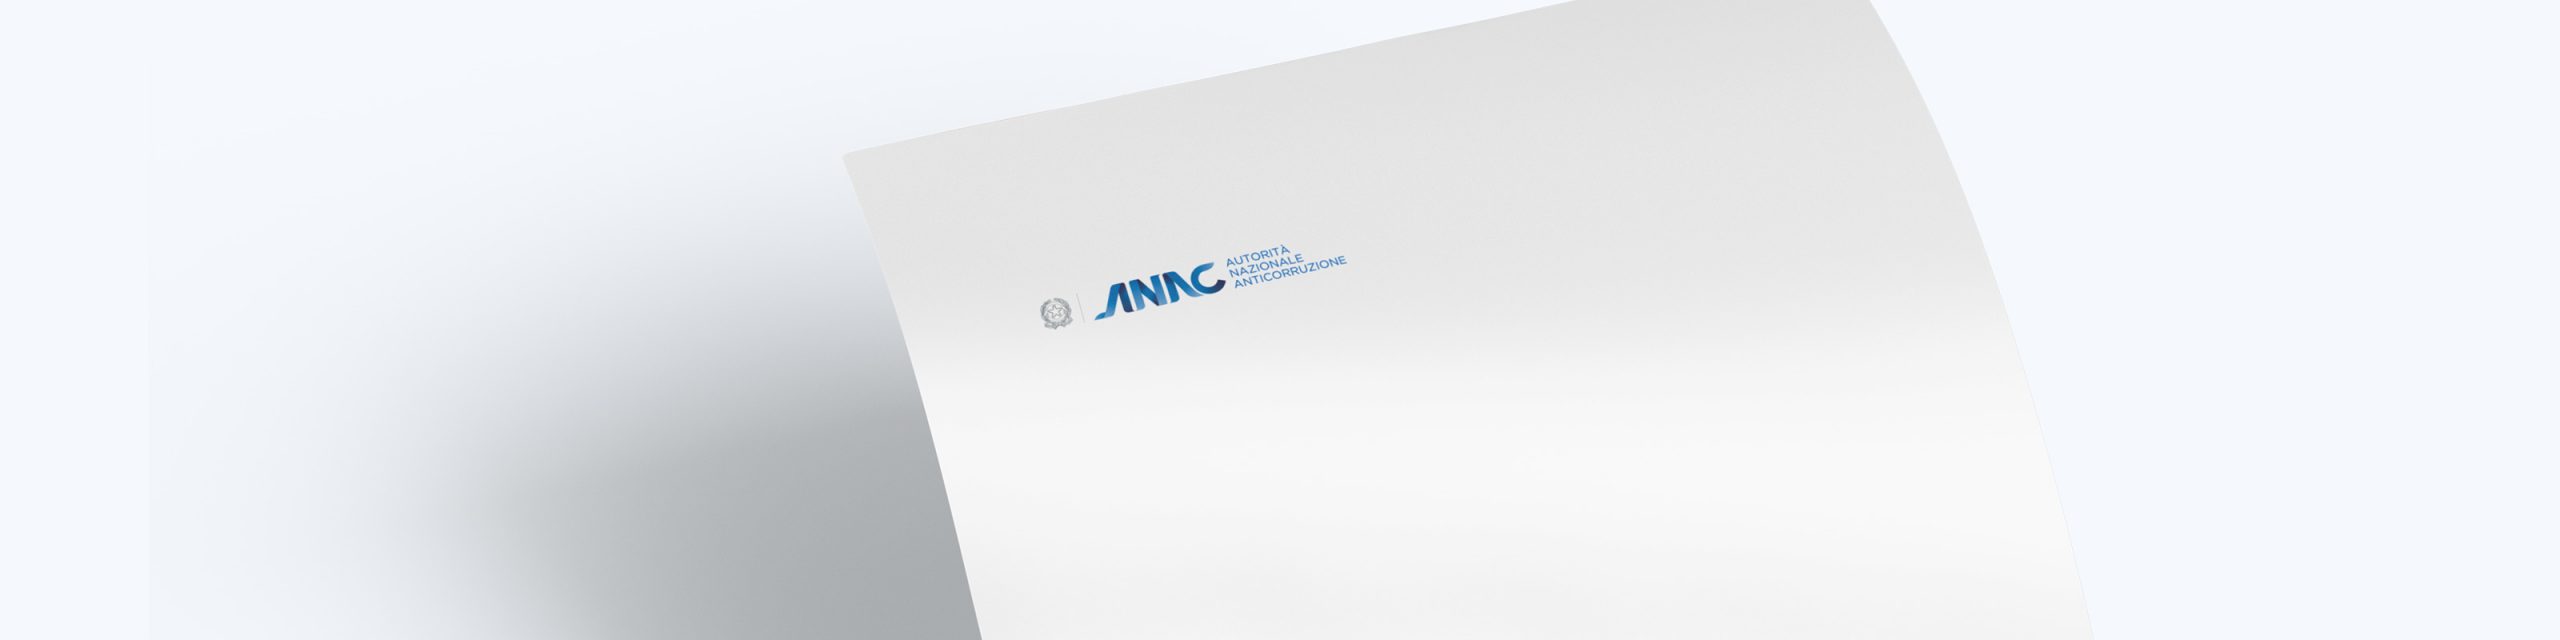 Anac istituisce il Fascicolo digitale per gli operatori economici